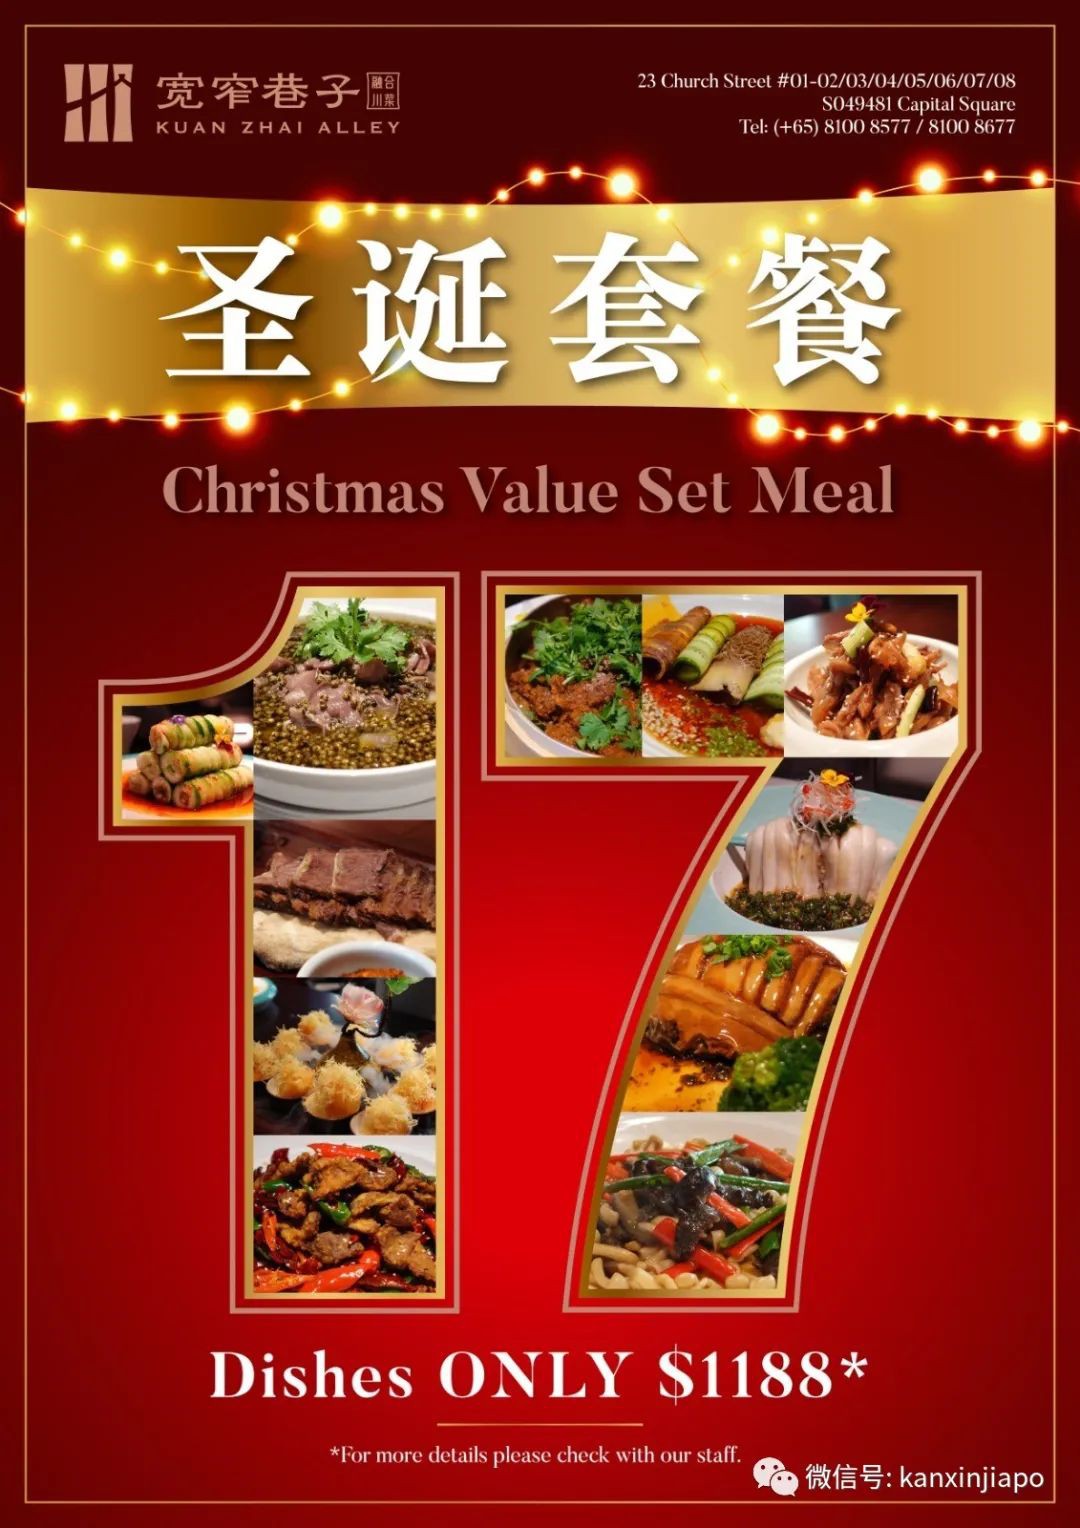 紅紅火火吃川菜，還有聖誕樹攝影大賽，可贏取$588聖誕大餐